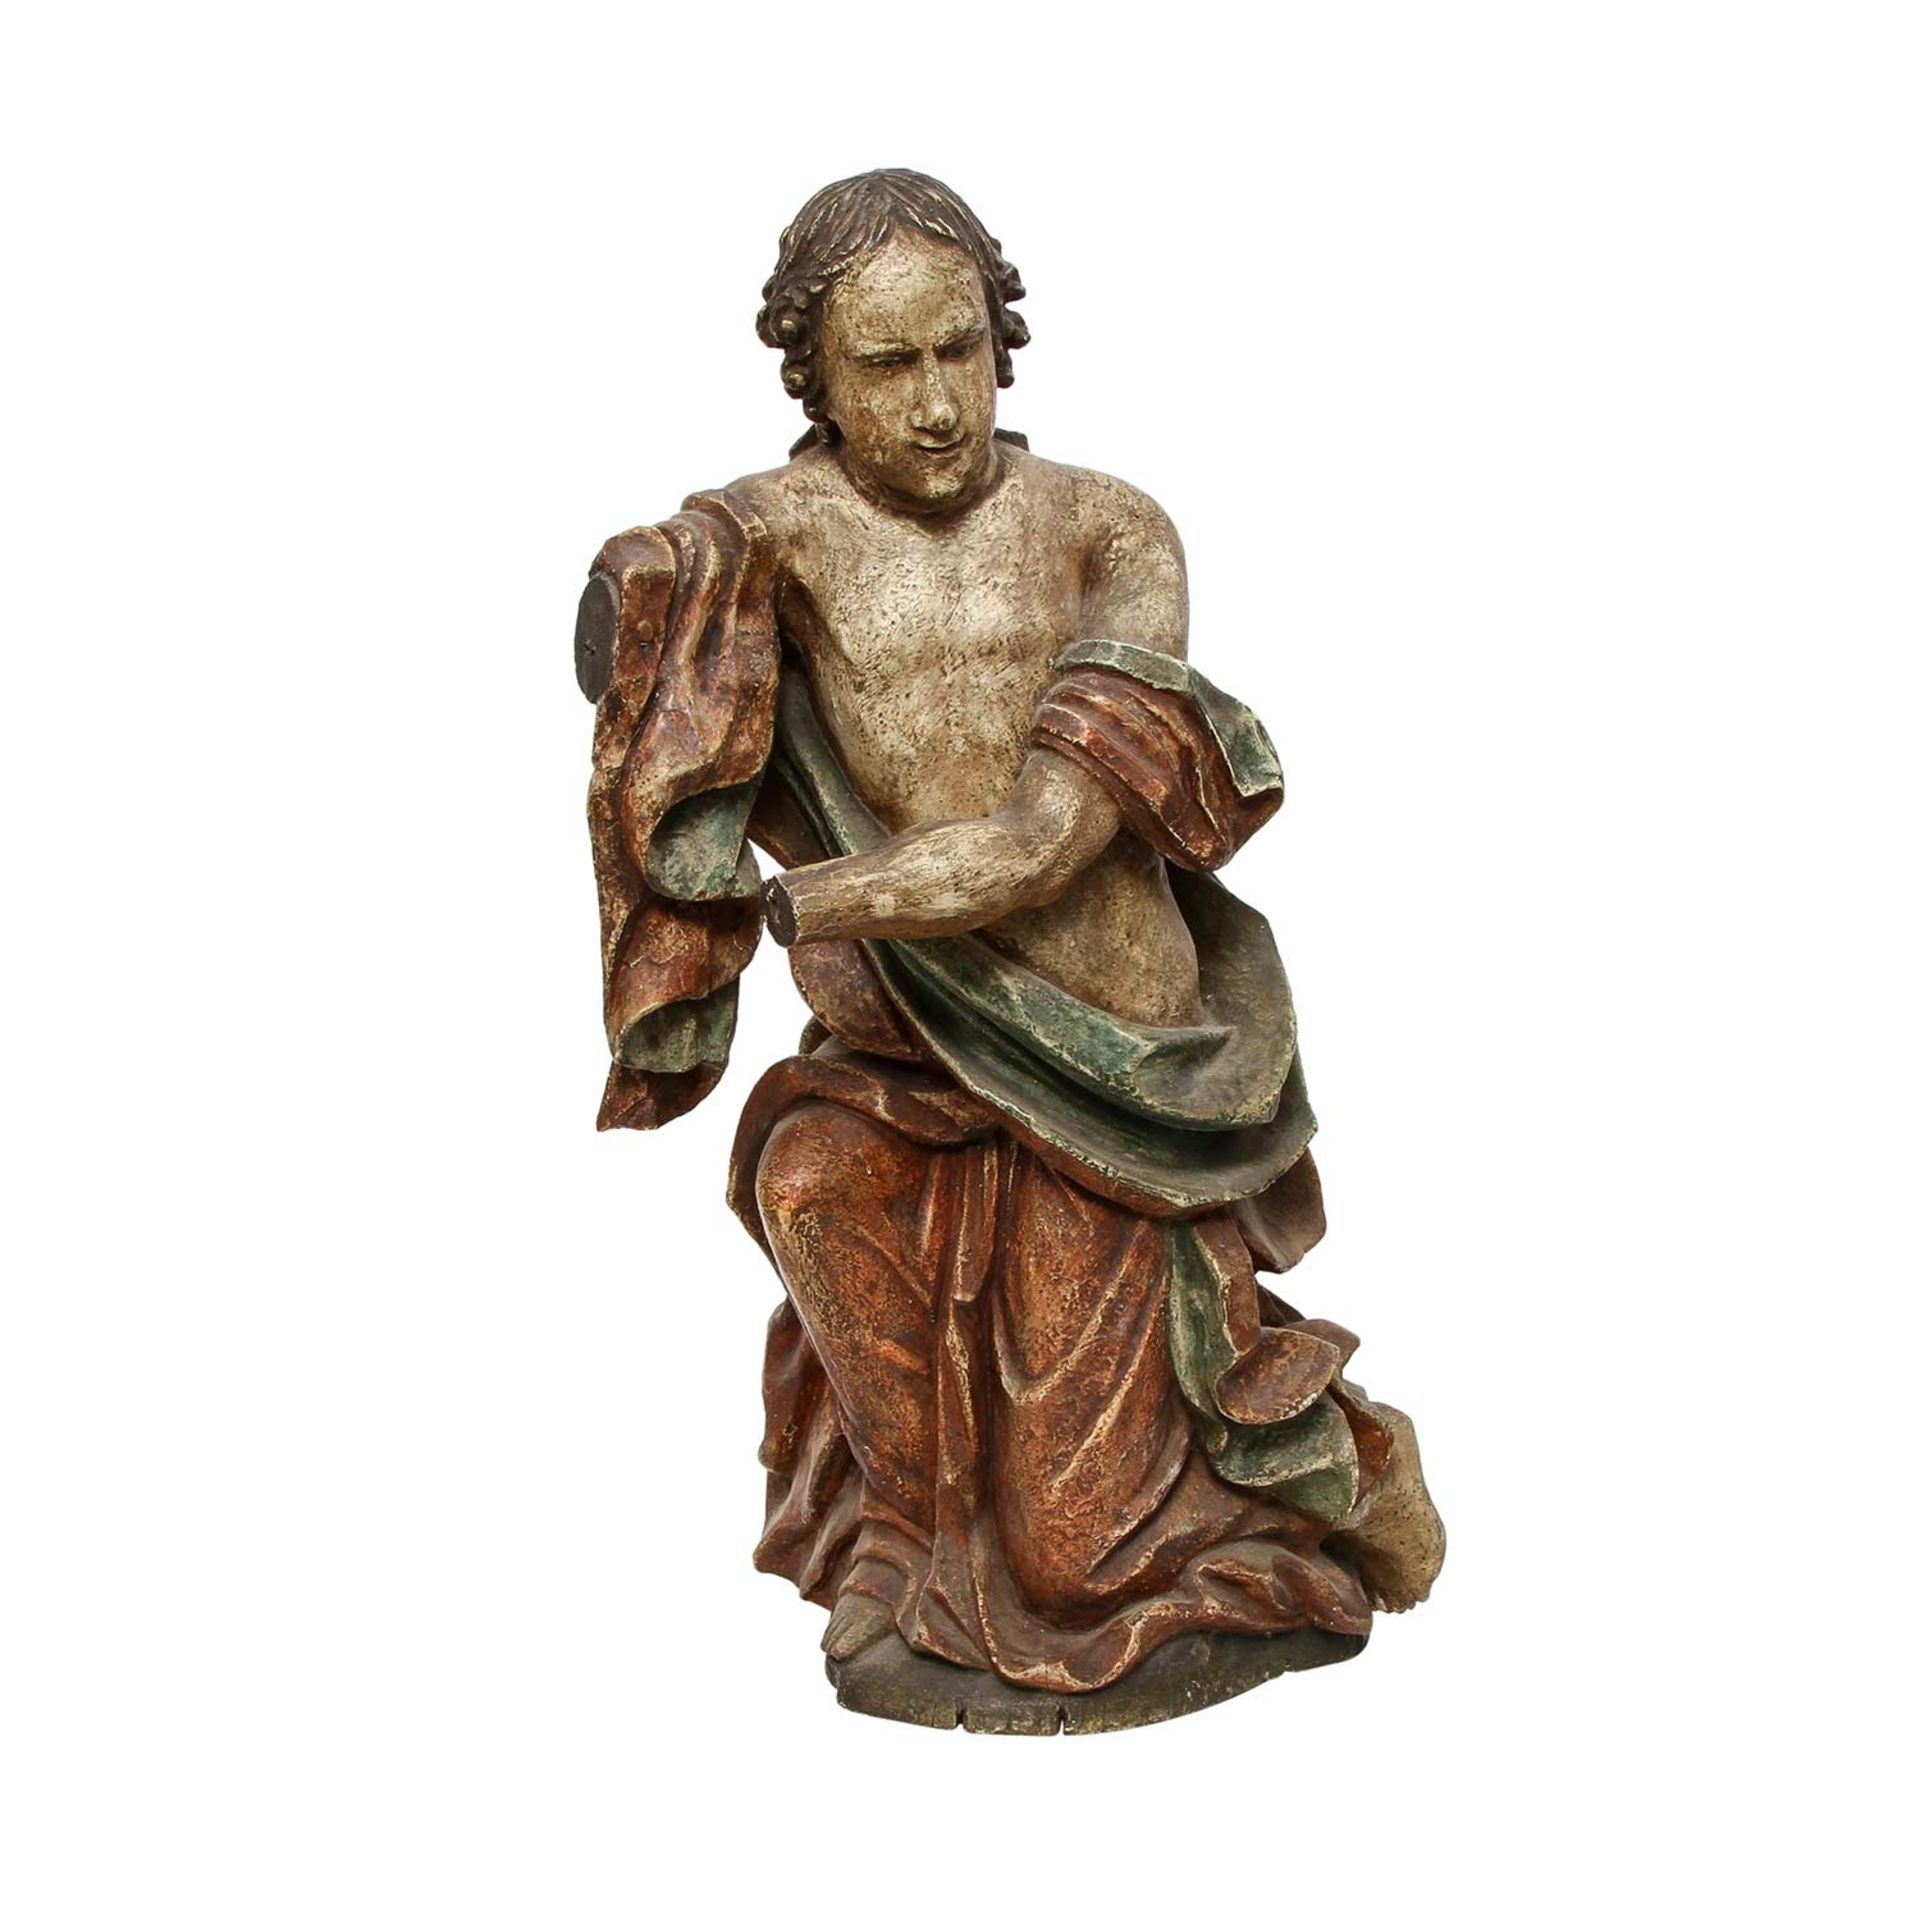 KNIENDER ENGEL 19./20. Jh., in Holz geschnitzt und gefasst, der Engel kniend dargestellt, mit - Image 5 of 7